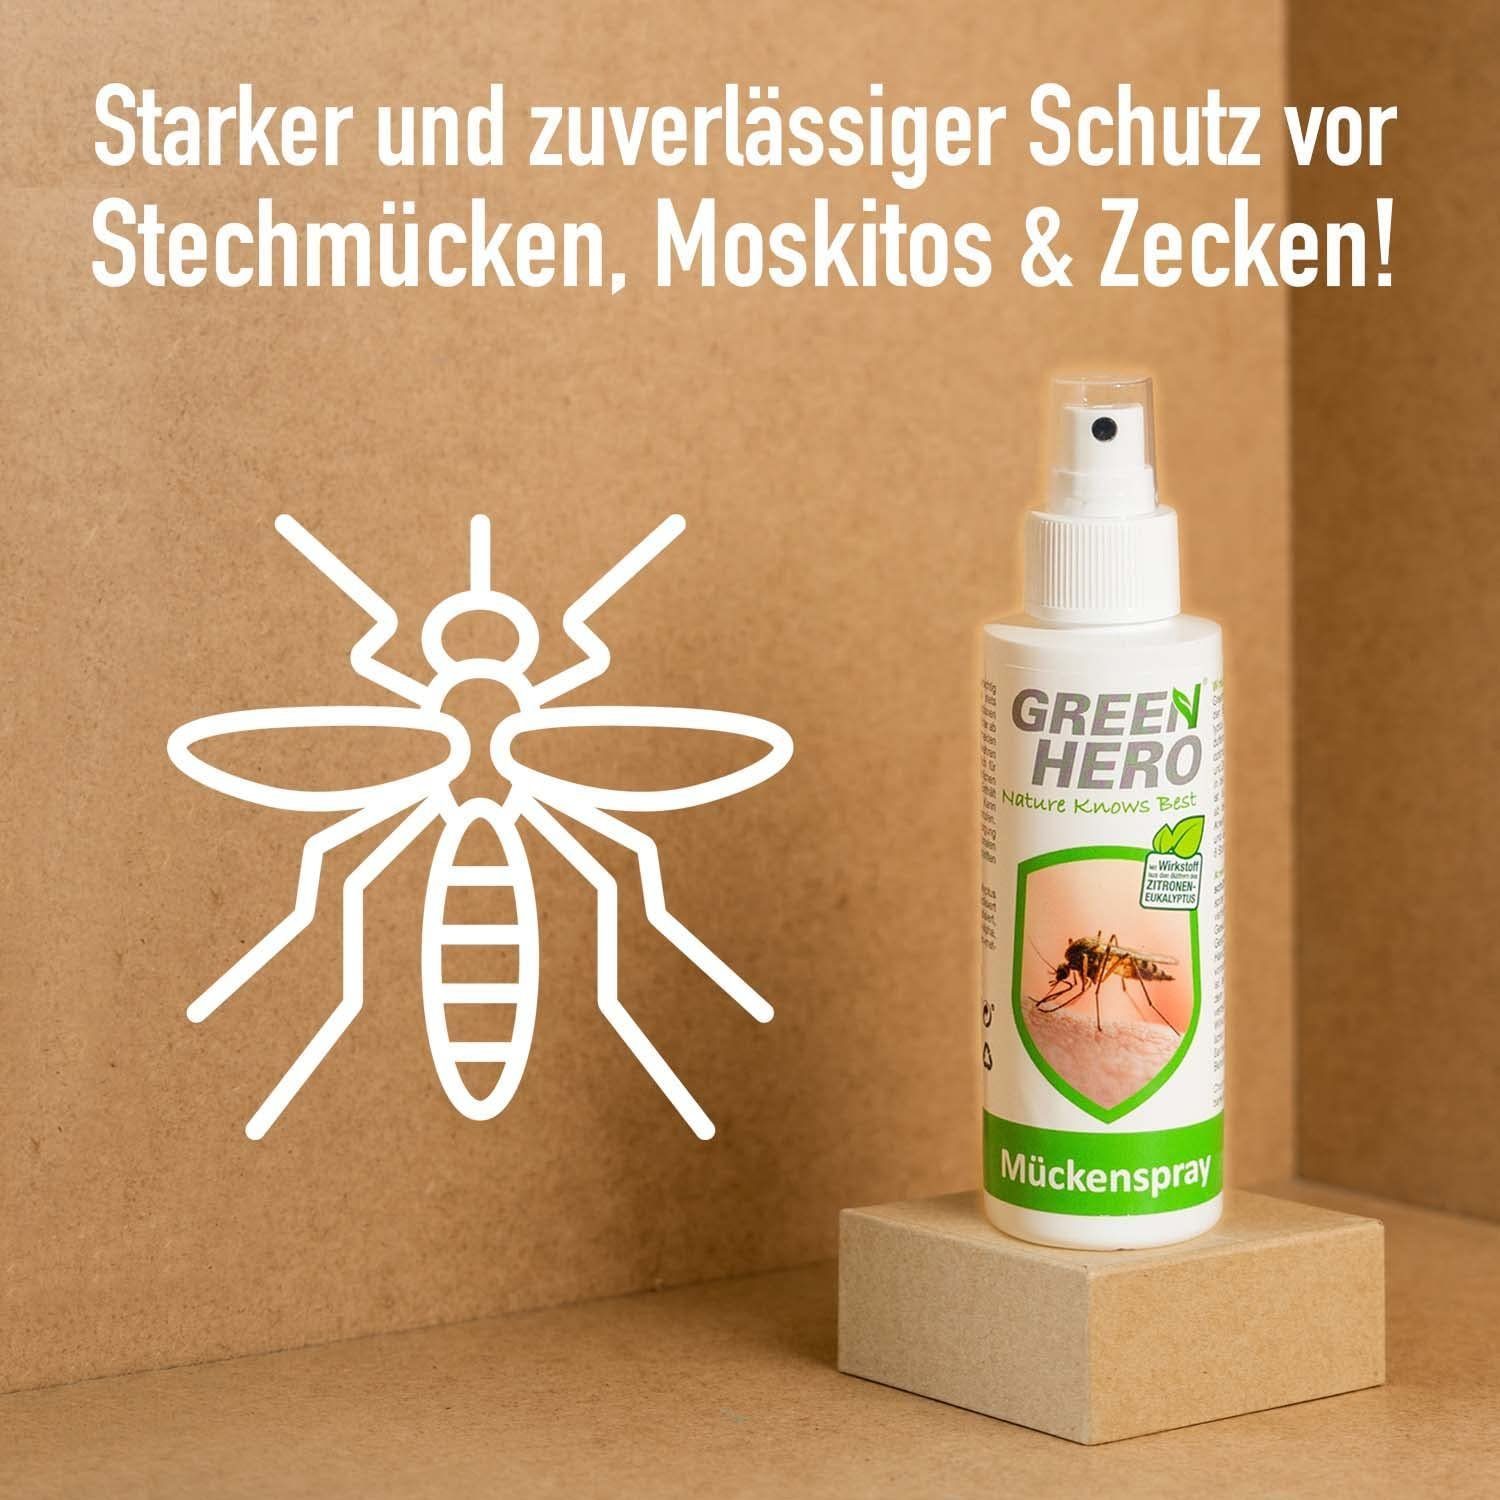 & Insektenspray schützt GreenHero Mückenspray Moskitos ml, 100 Zecken, vor Mückenschutz Steckmücken,